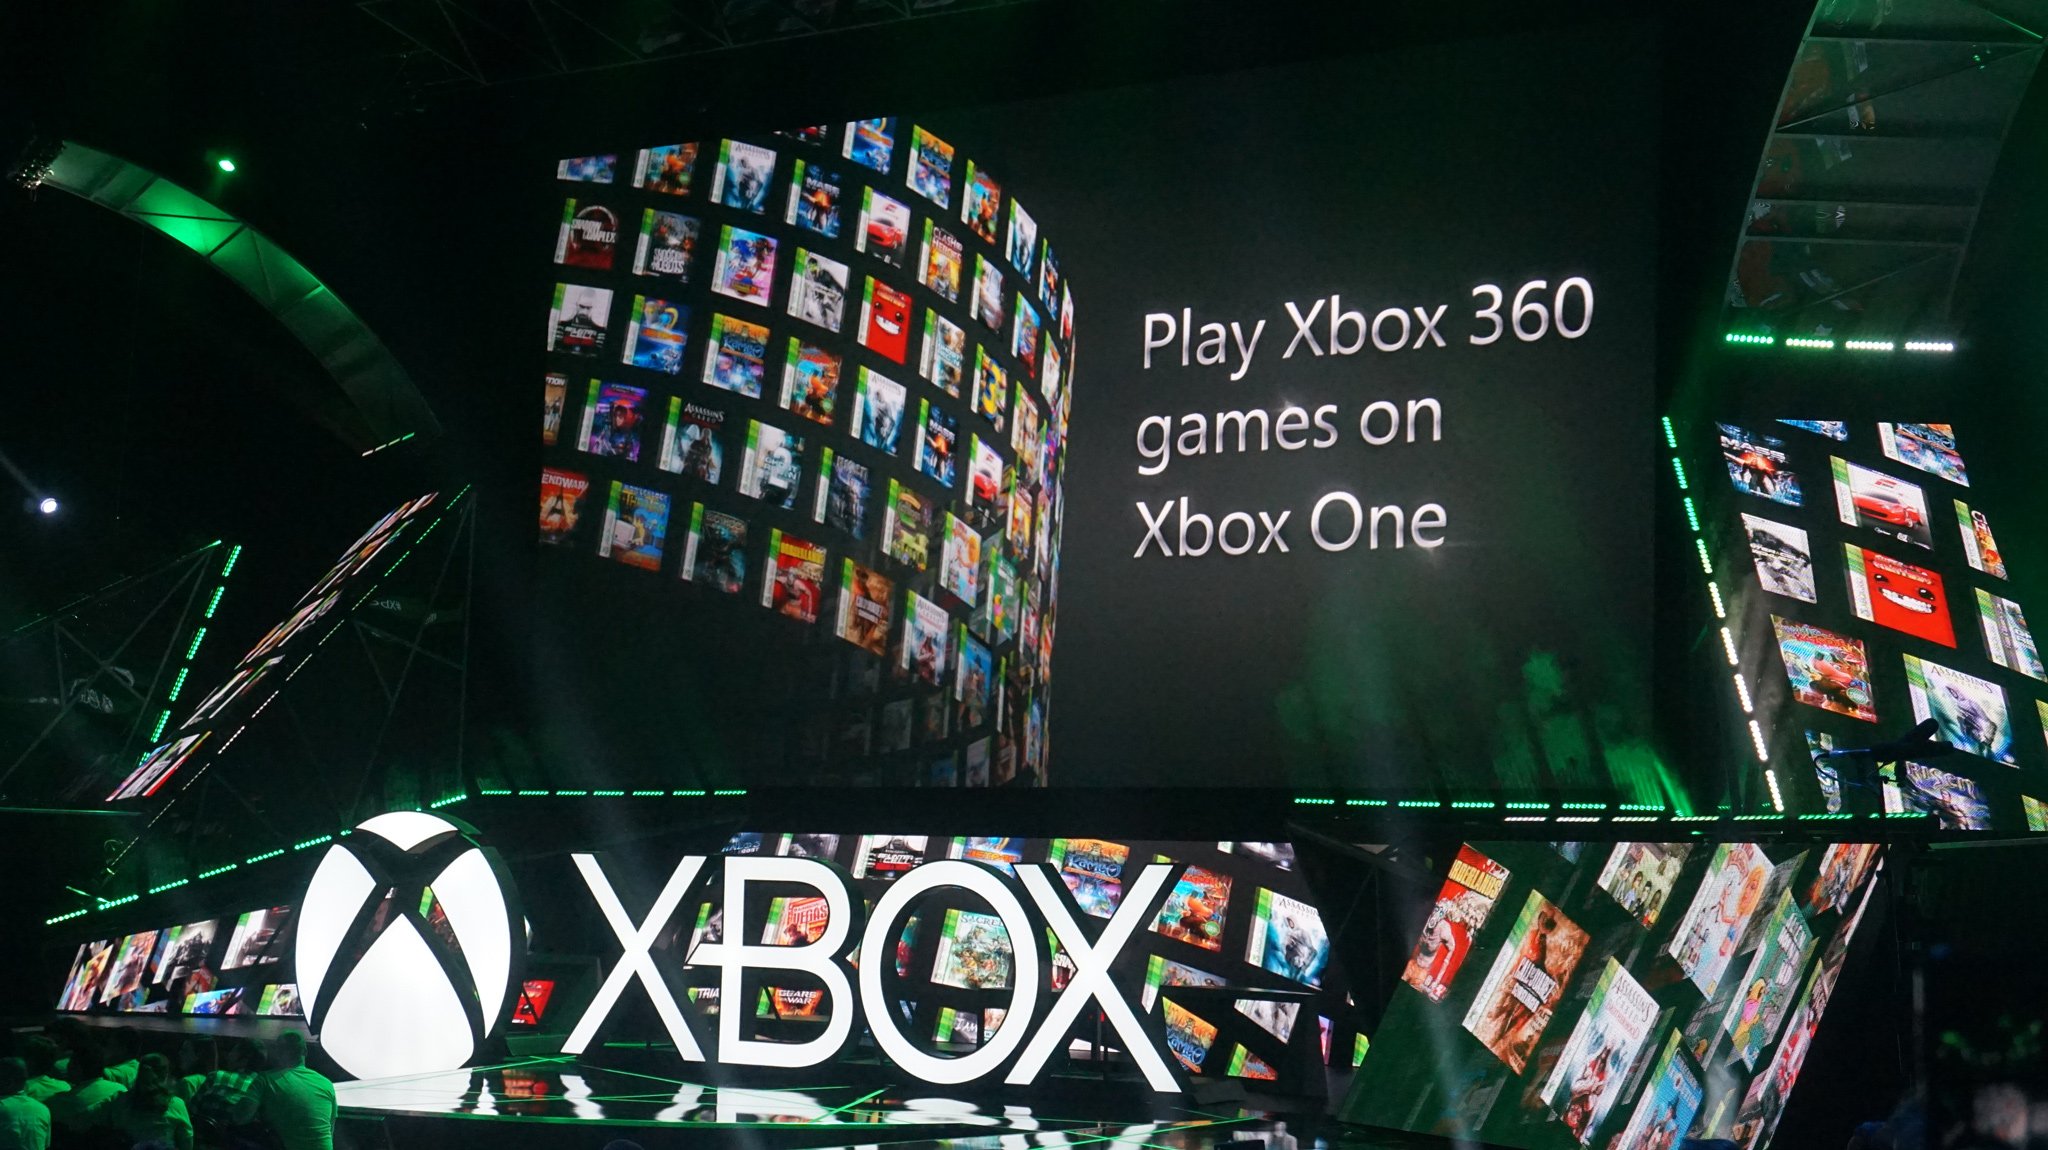 微软的 Xbox 360 向后兼容计划仍然是该平台的最佳功能之一。 